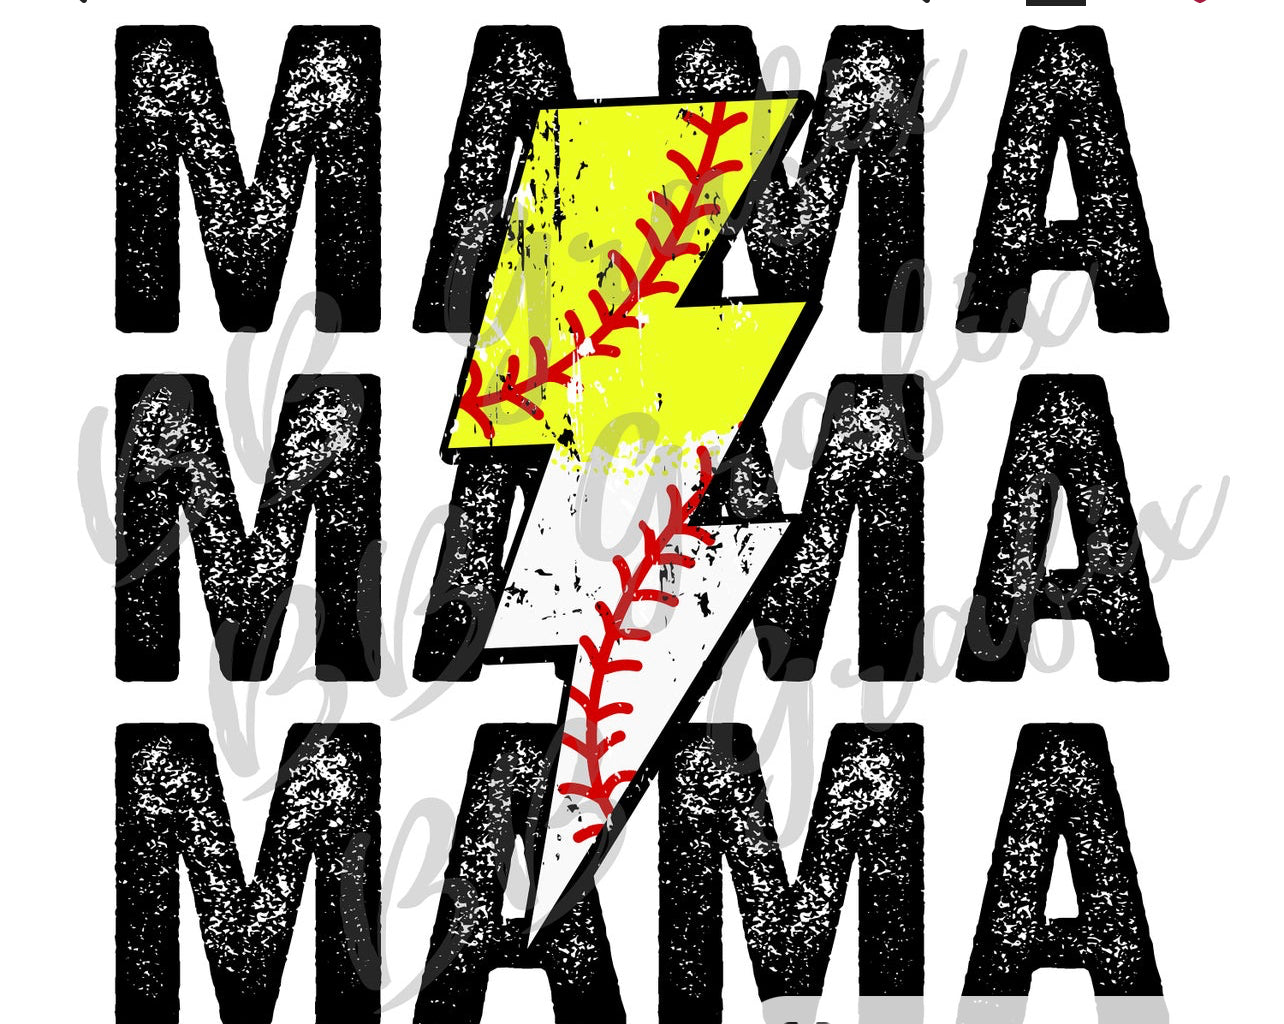 Mama Baseball/softball lighting bolt - Made to order